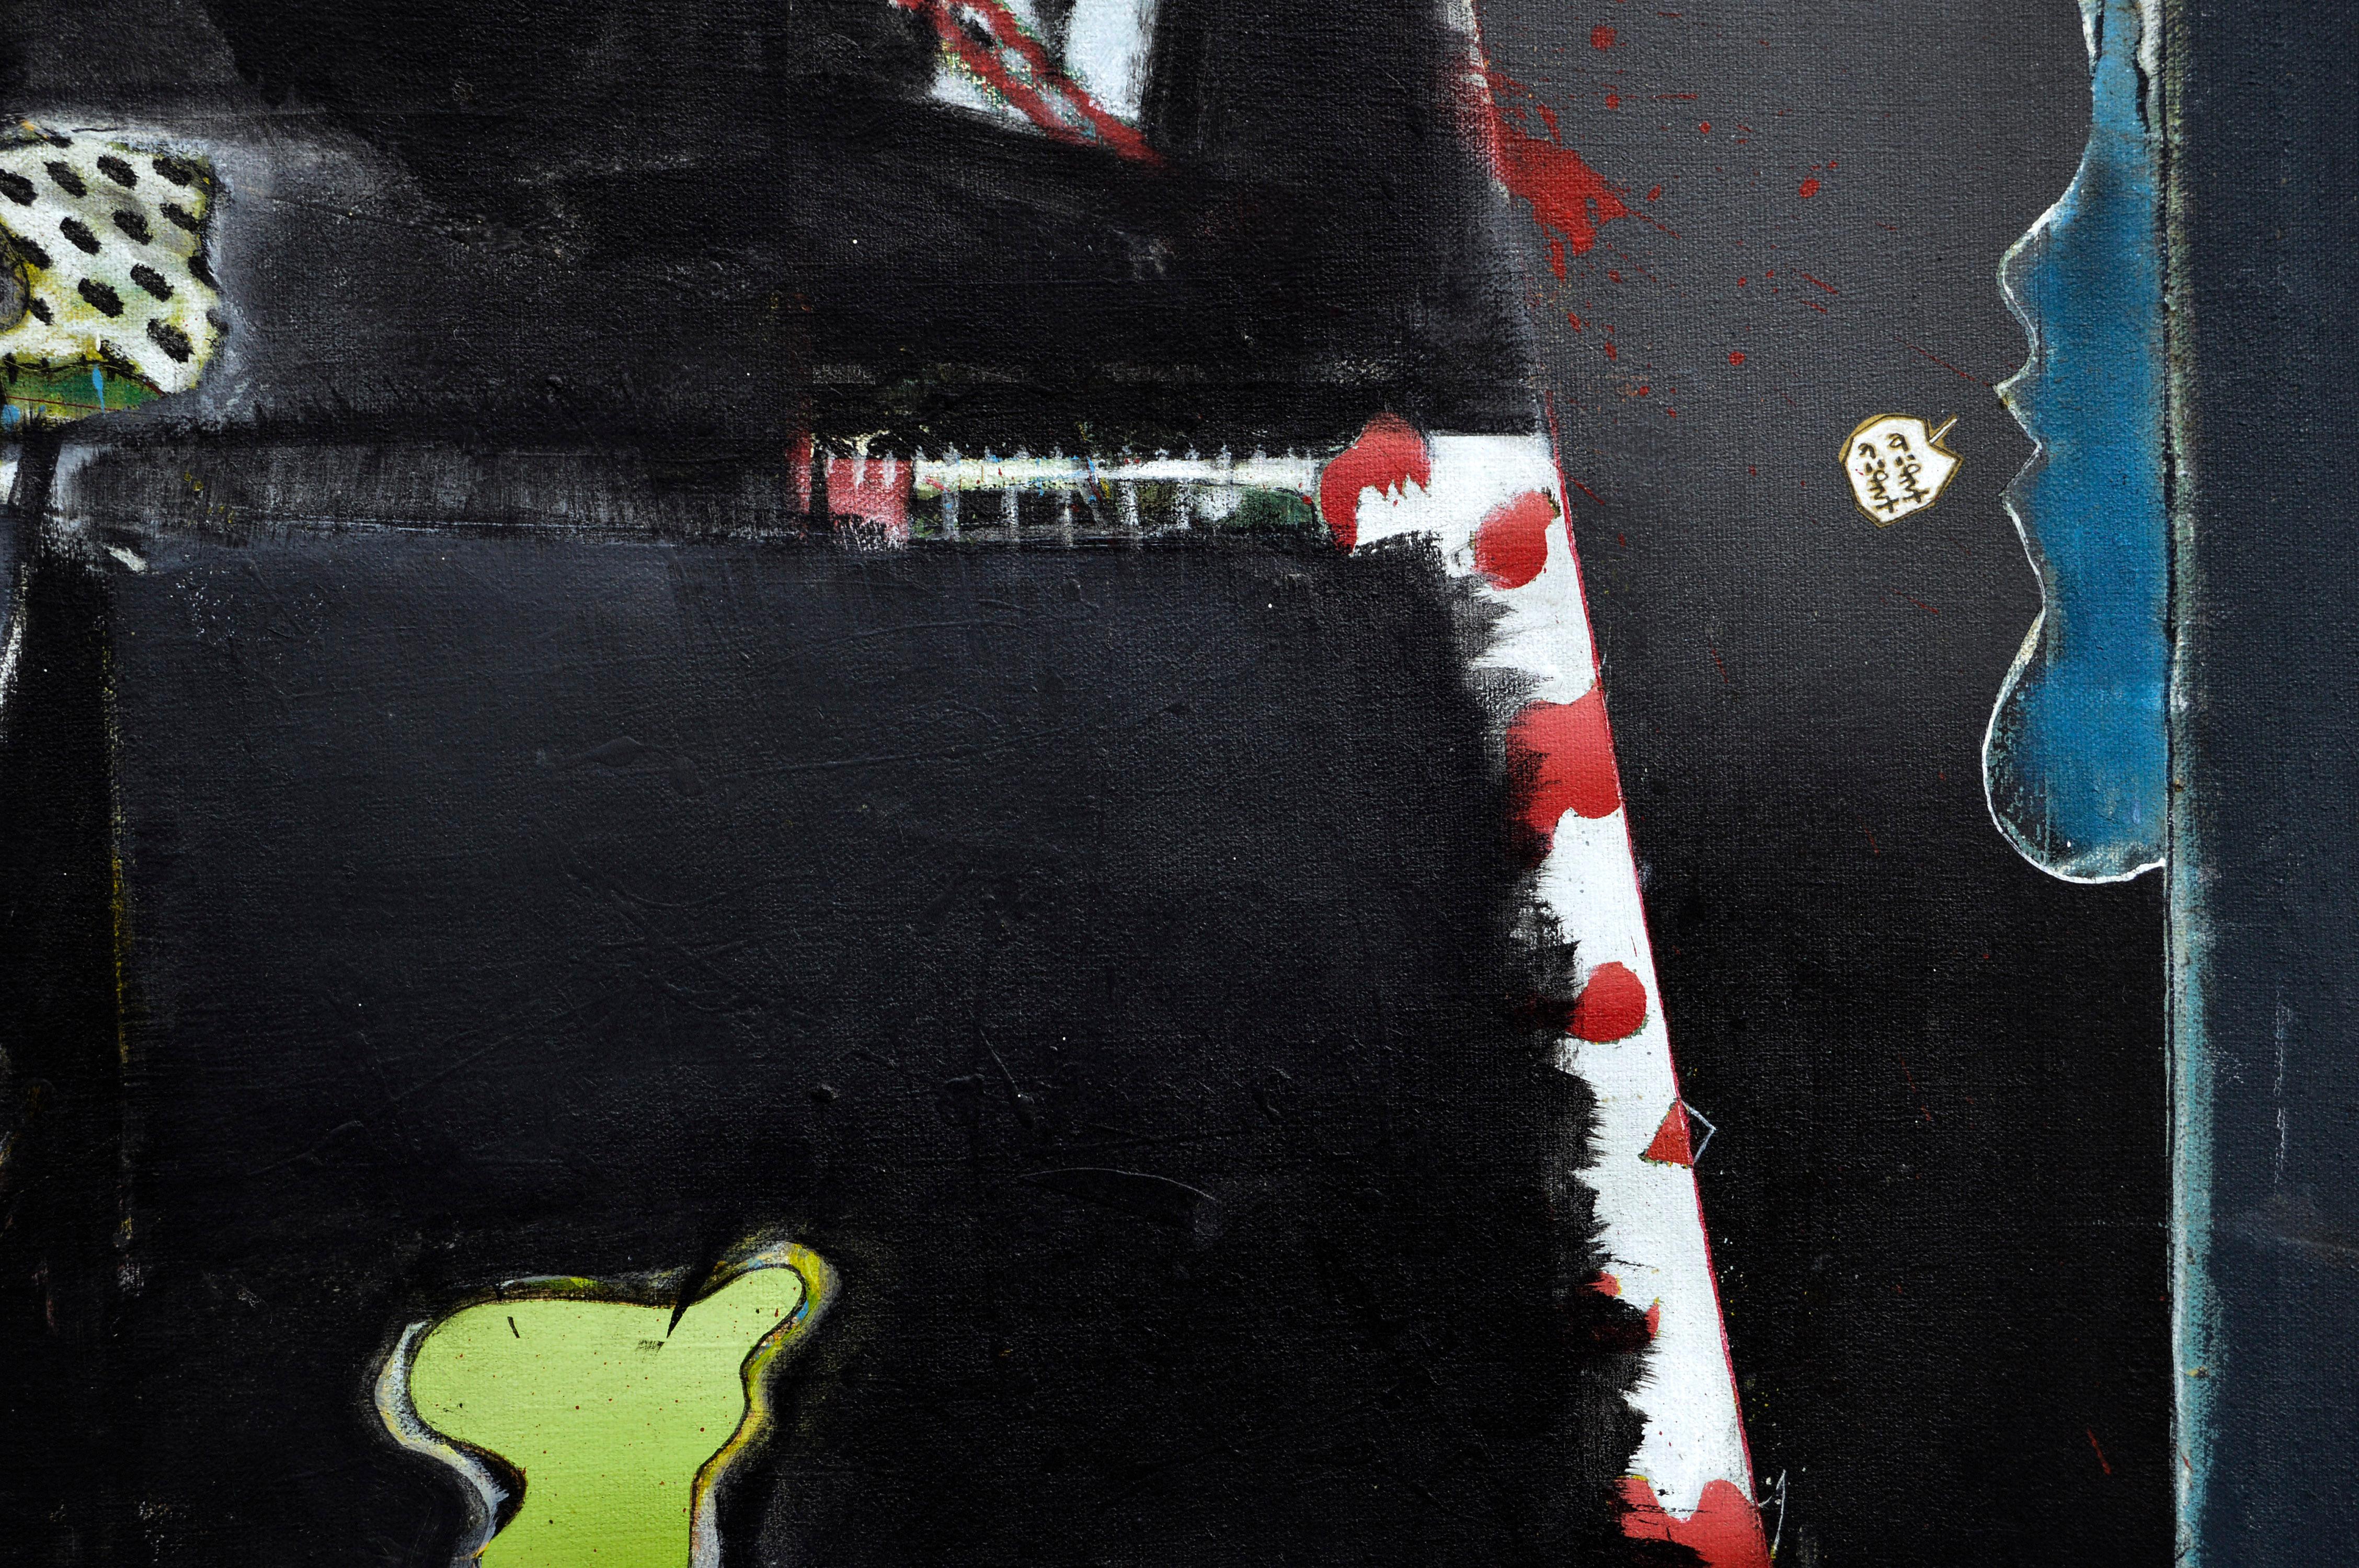 Abstrakt-expressionistische Komposition auf Schwarz  – Painting von Ross H. Pollette